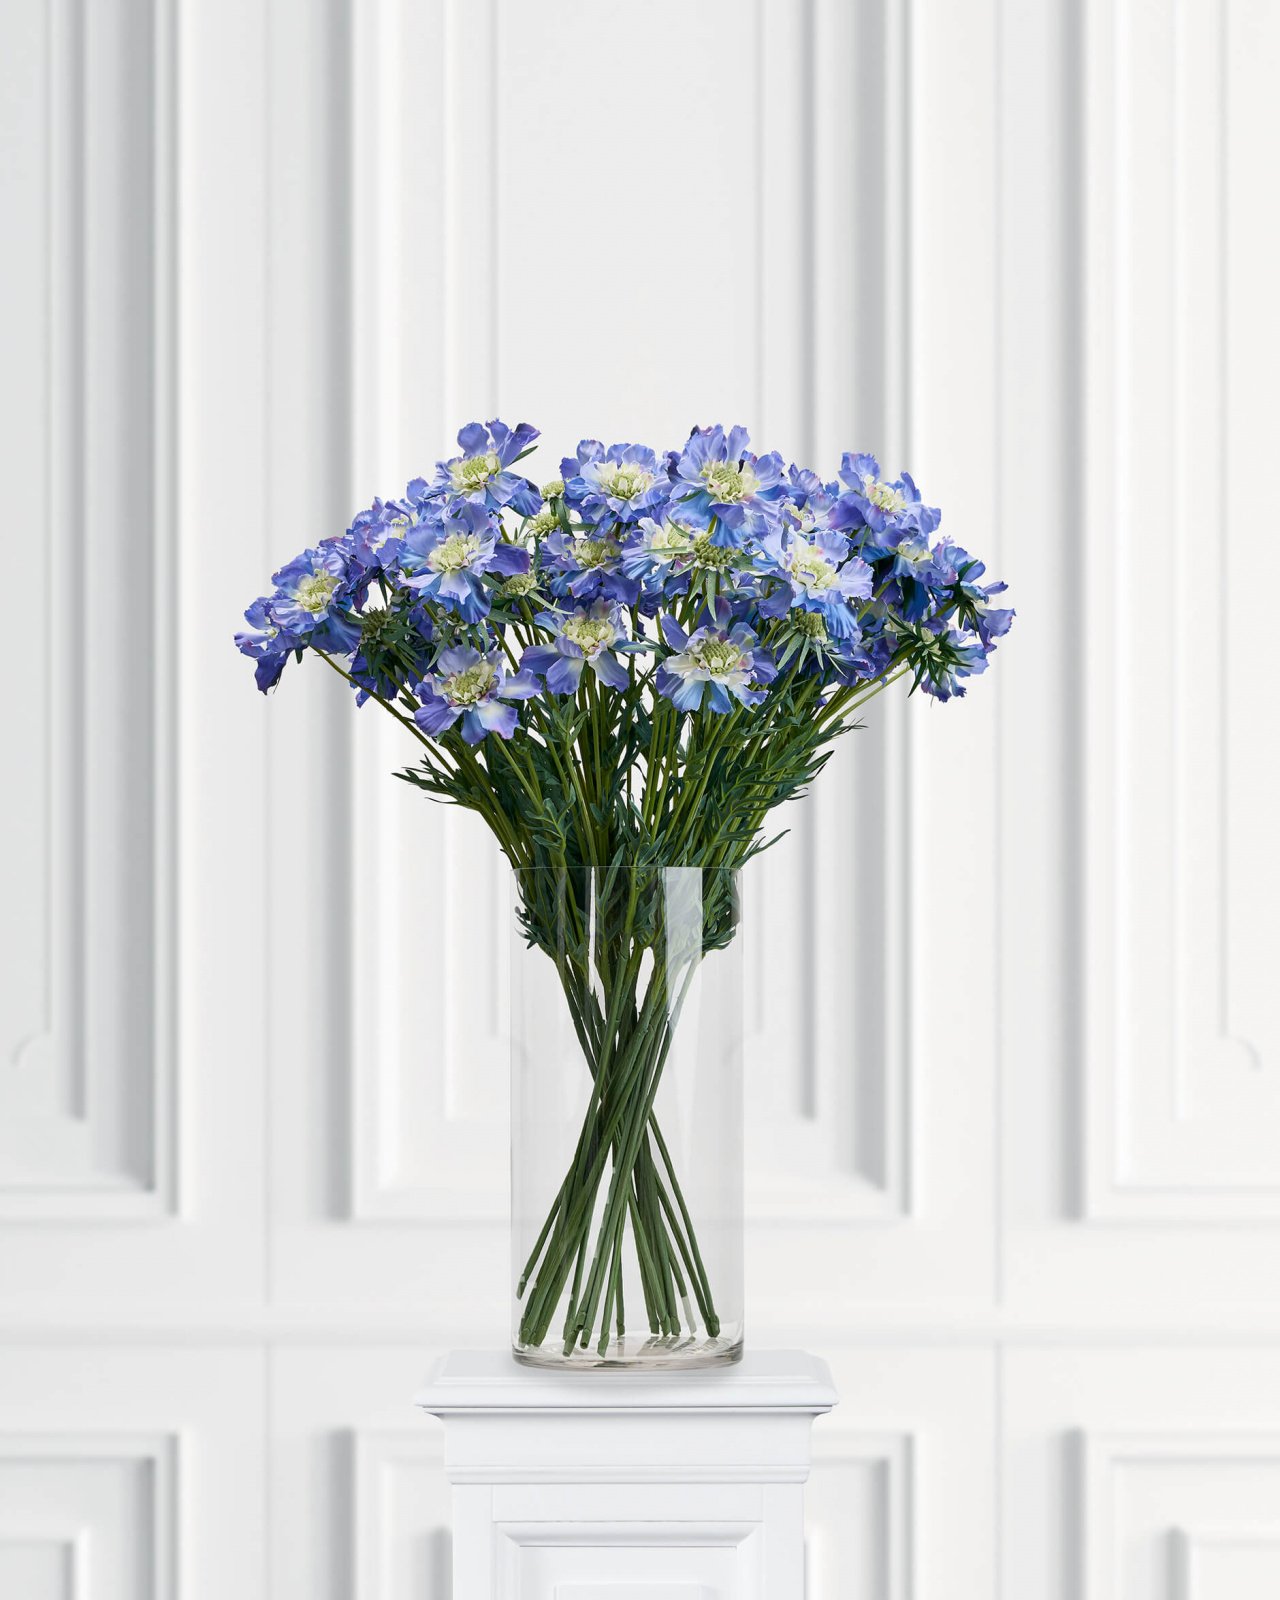 Scabiosa – afskåret blomst blå